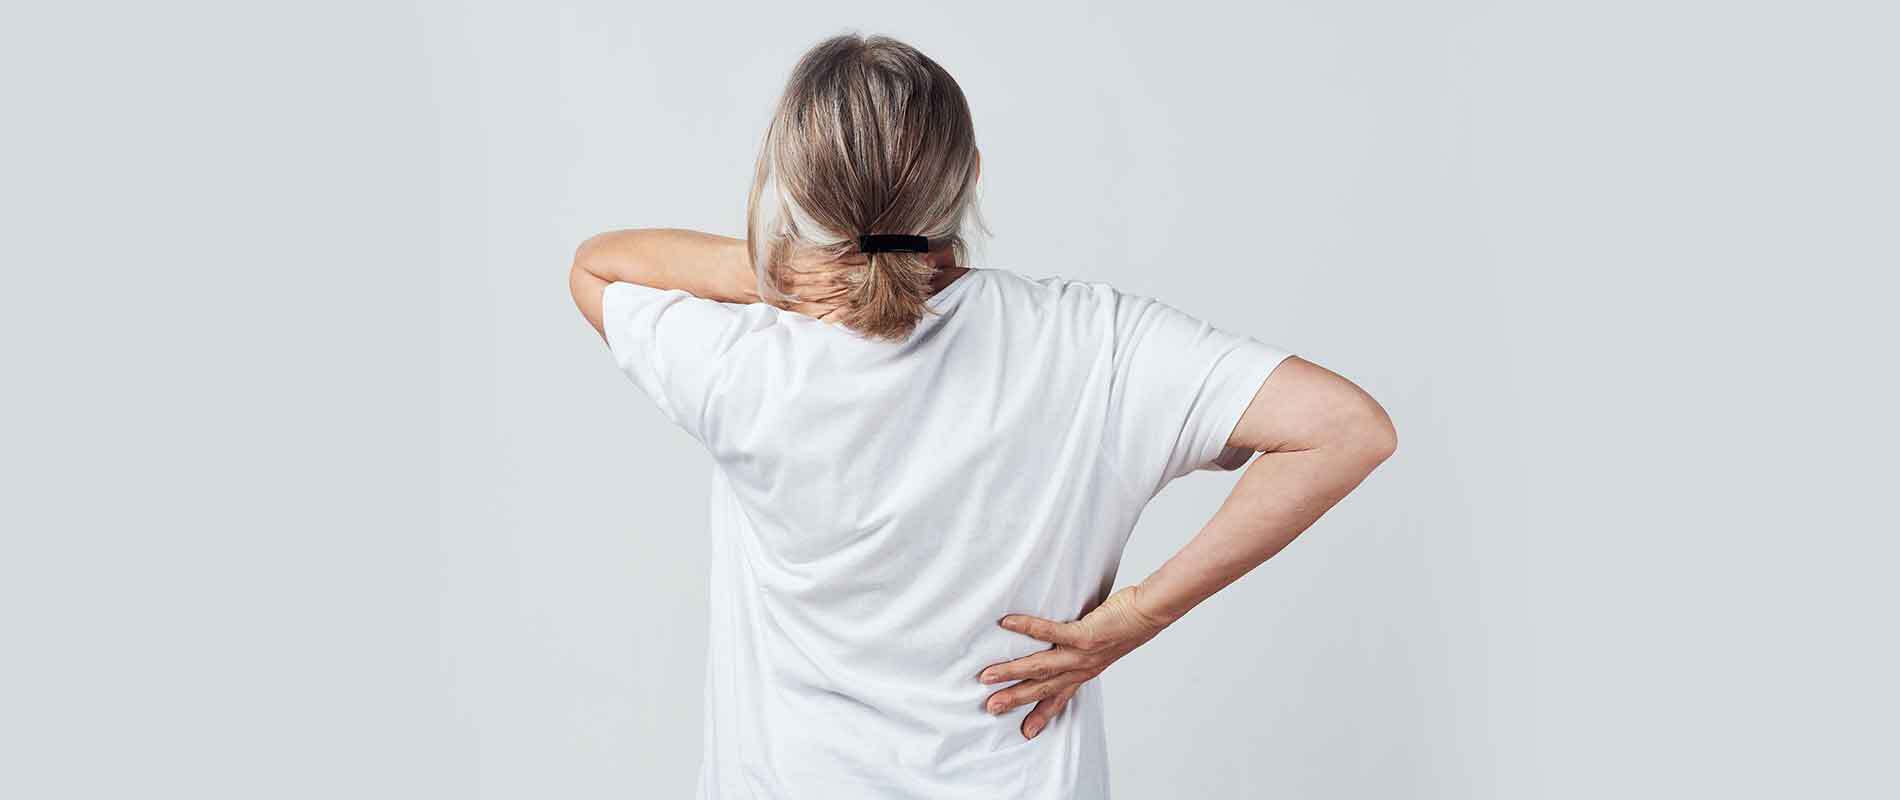 Yoga poses for back pain | PDF